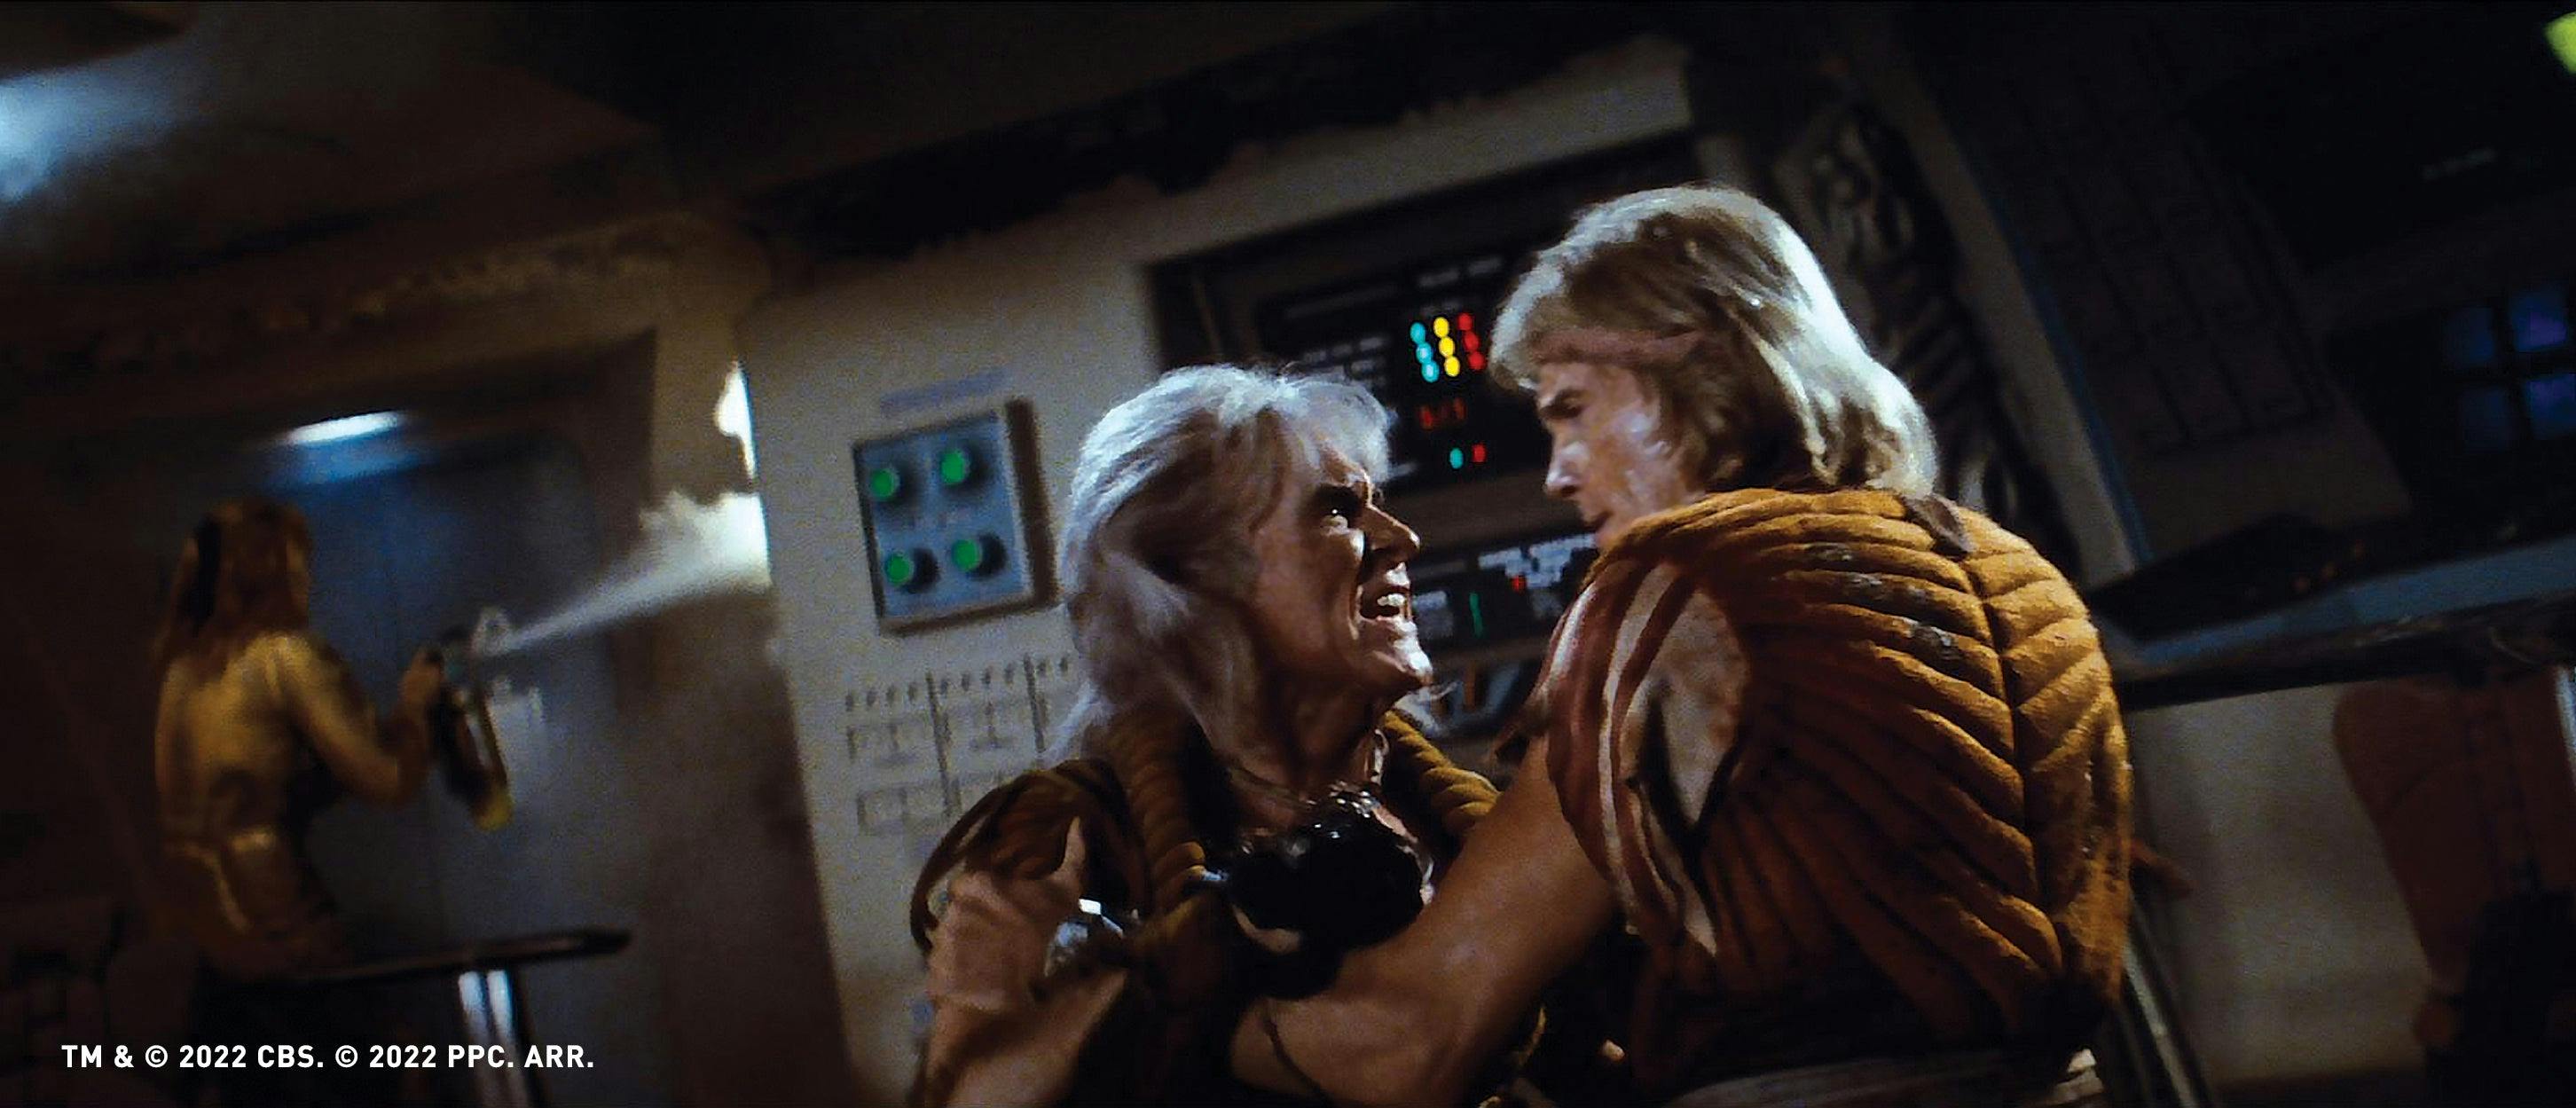 Ricardo Montalban and Judson Scott in Star Trek II: The Wrath of Khan (1982)